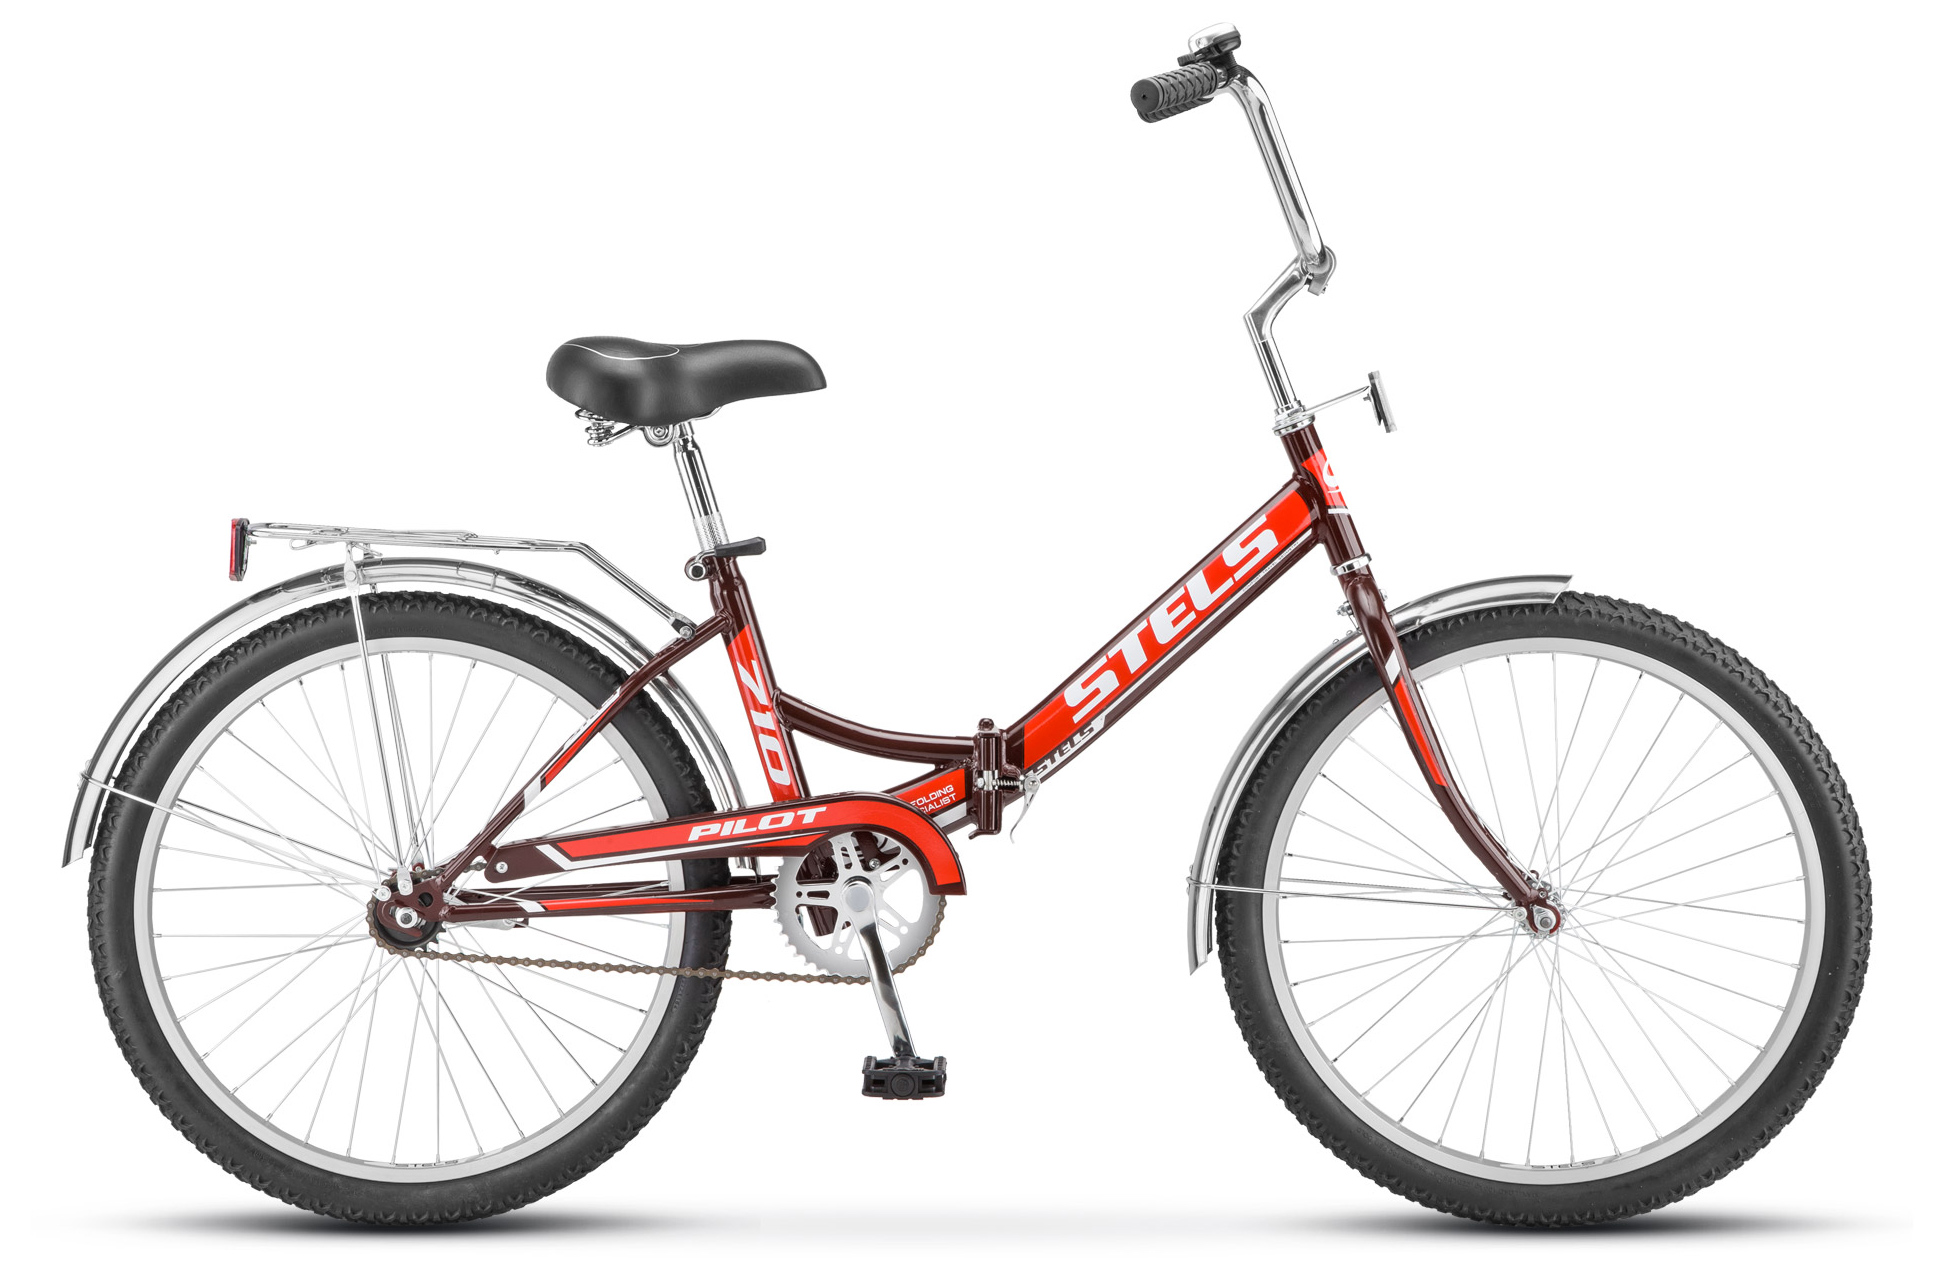  Отзывы о Складном велосипеде Stels Pilot 710 24" (Z010) 2019